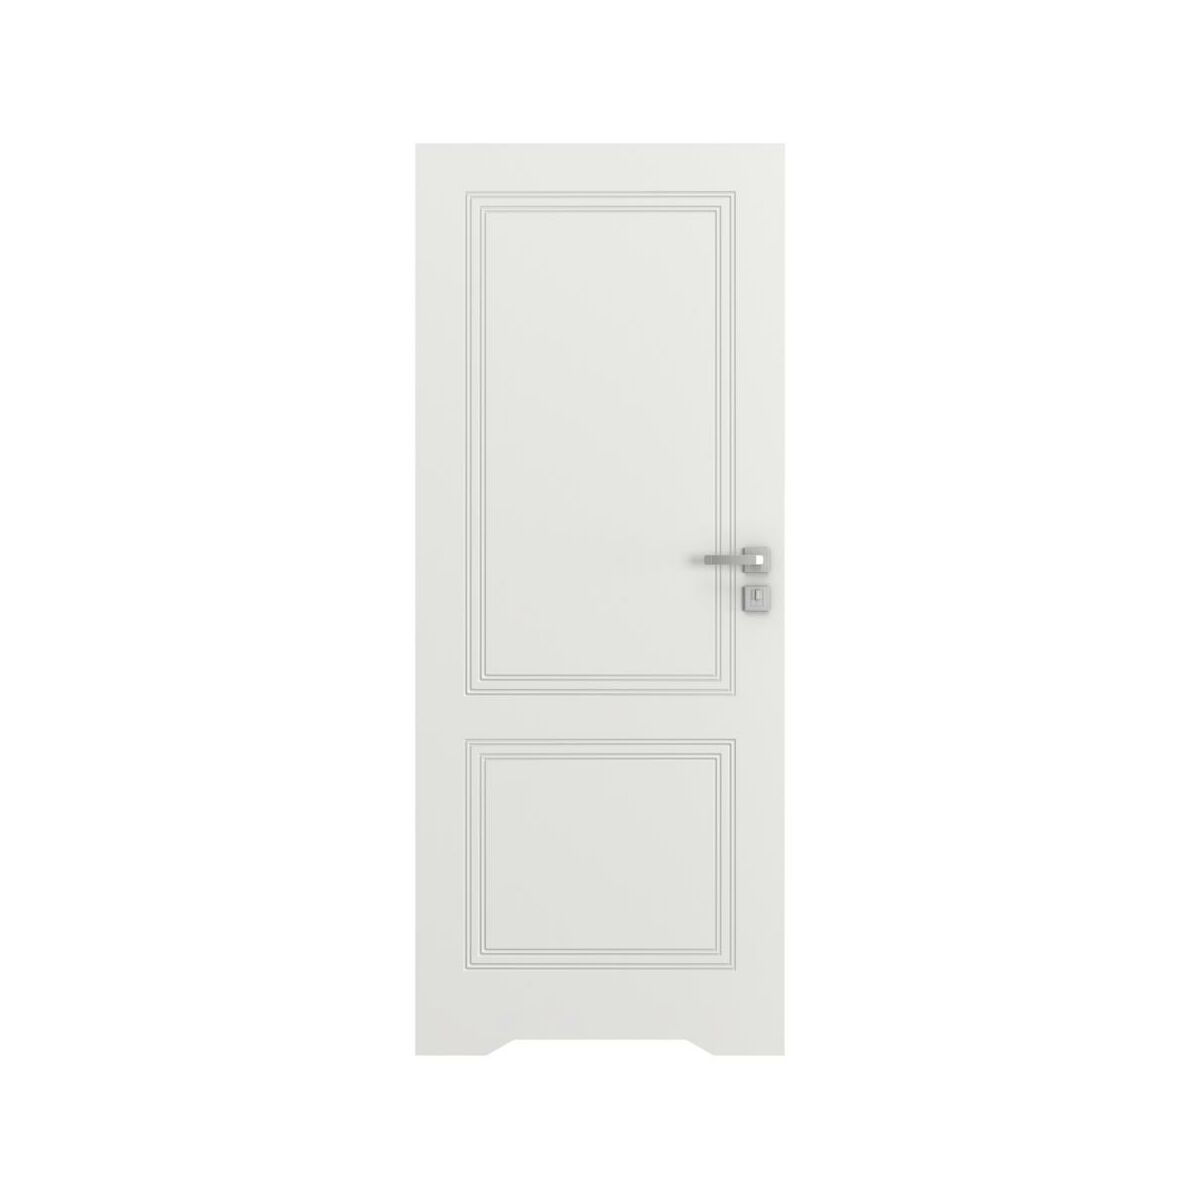 Drzwi wewnętrzne bezprzylgowe łazienkowe z podcięciem wentylacyjnym Vector V Białe 70 Prawe Porta